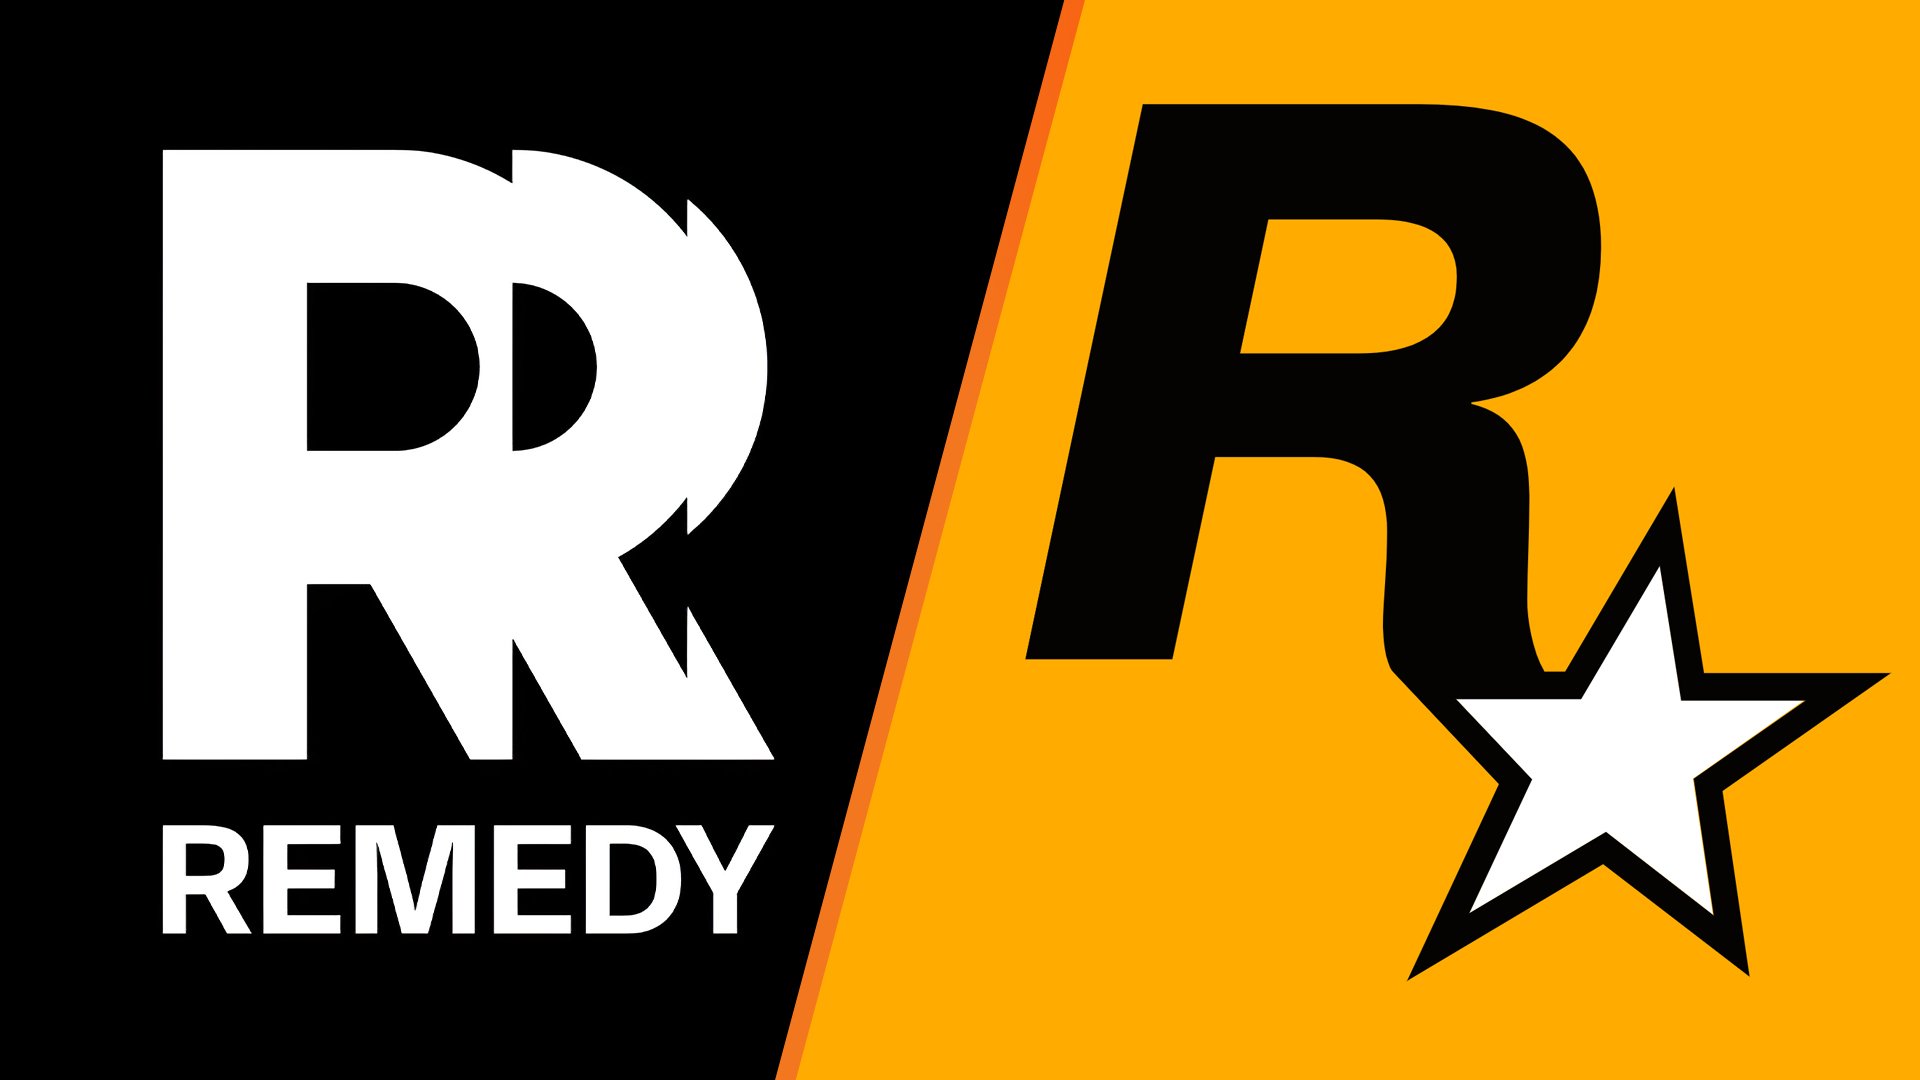 Take-Two ha presentato una controversia sul marchio relativo al nuovo logo di Remedy, affermando che è troppo simile al logo di Rockstar.